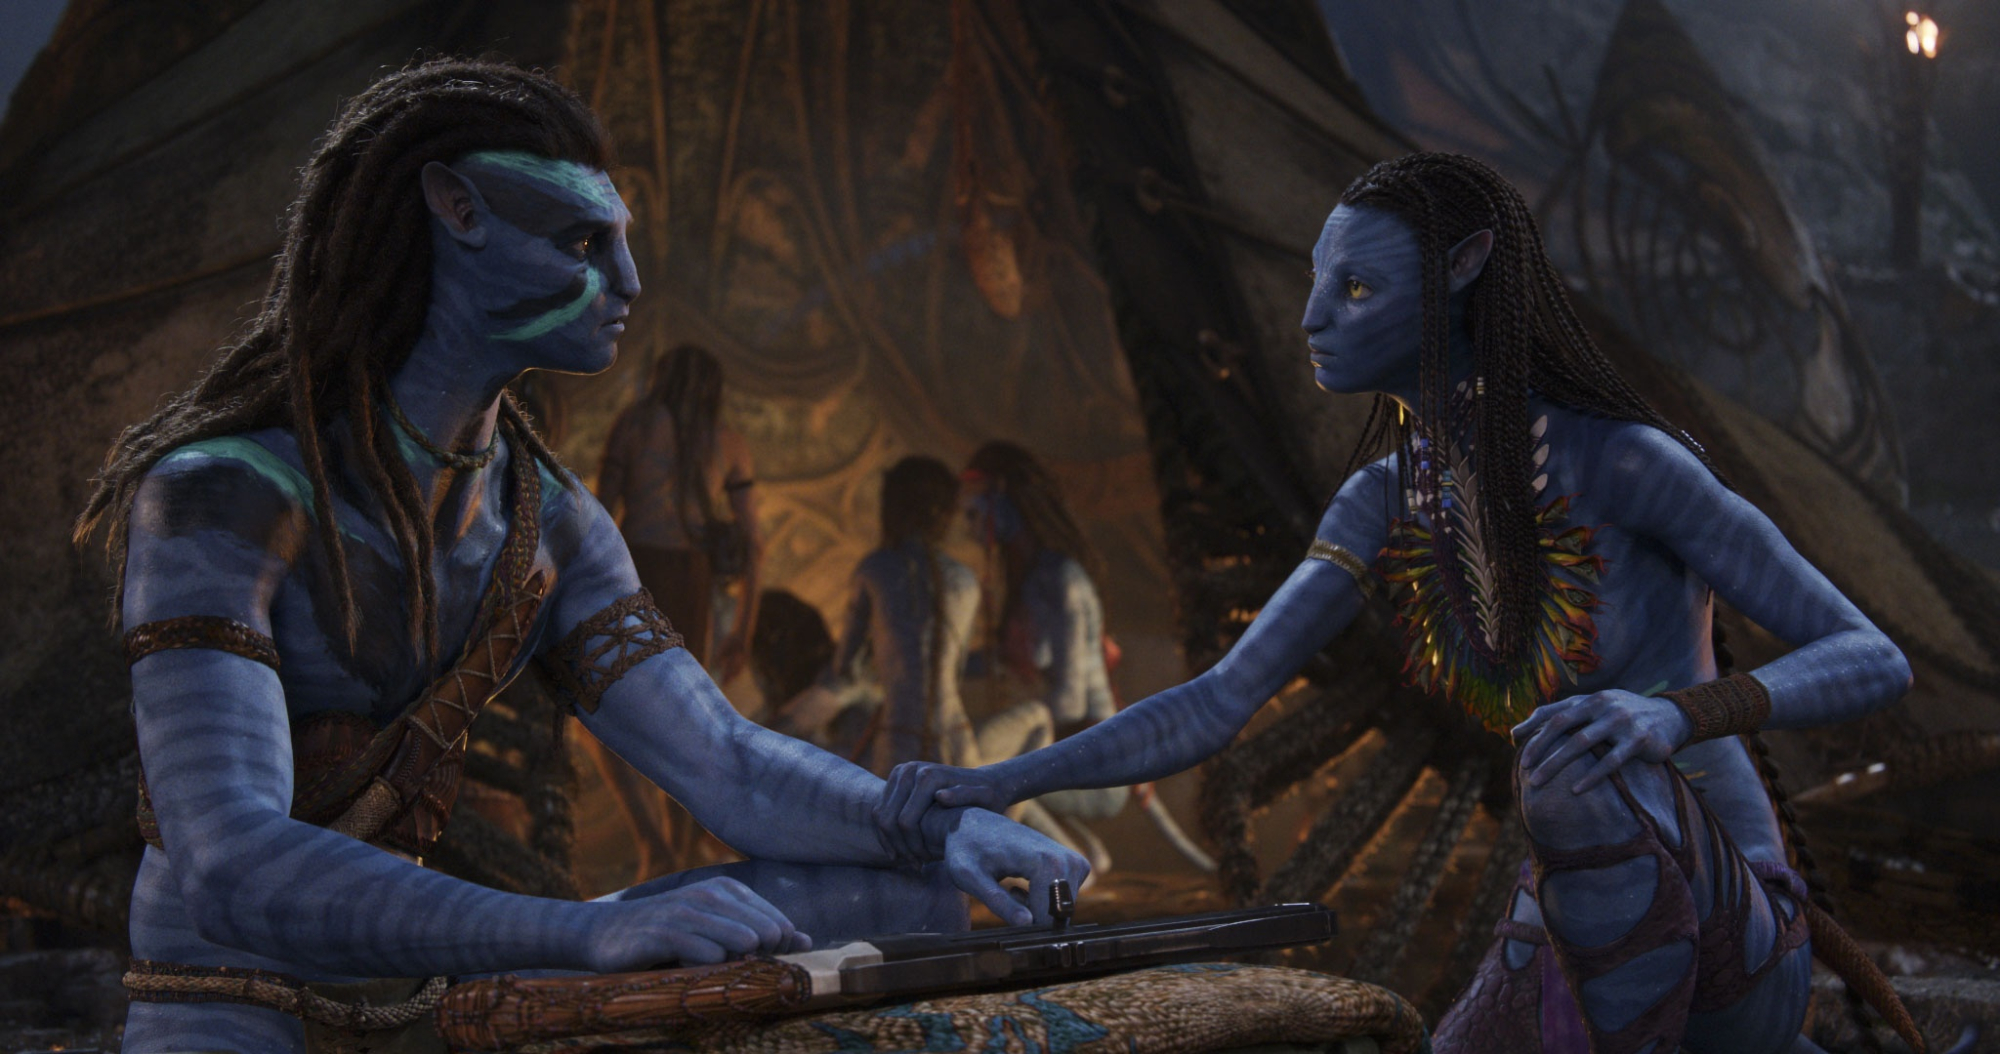 Trì hoãn lại ngày ra mắt của phim bom tấn Avatar 2